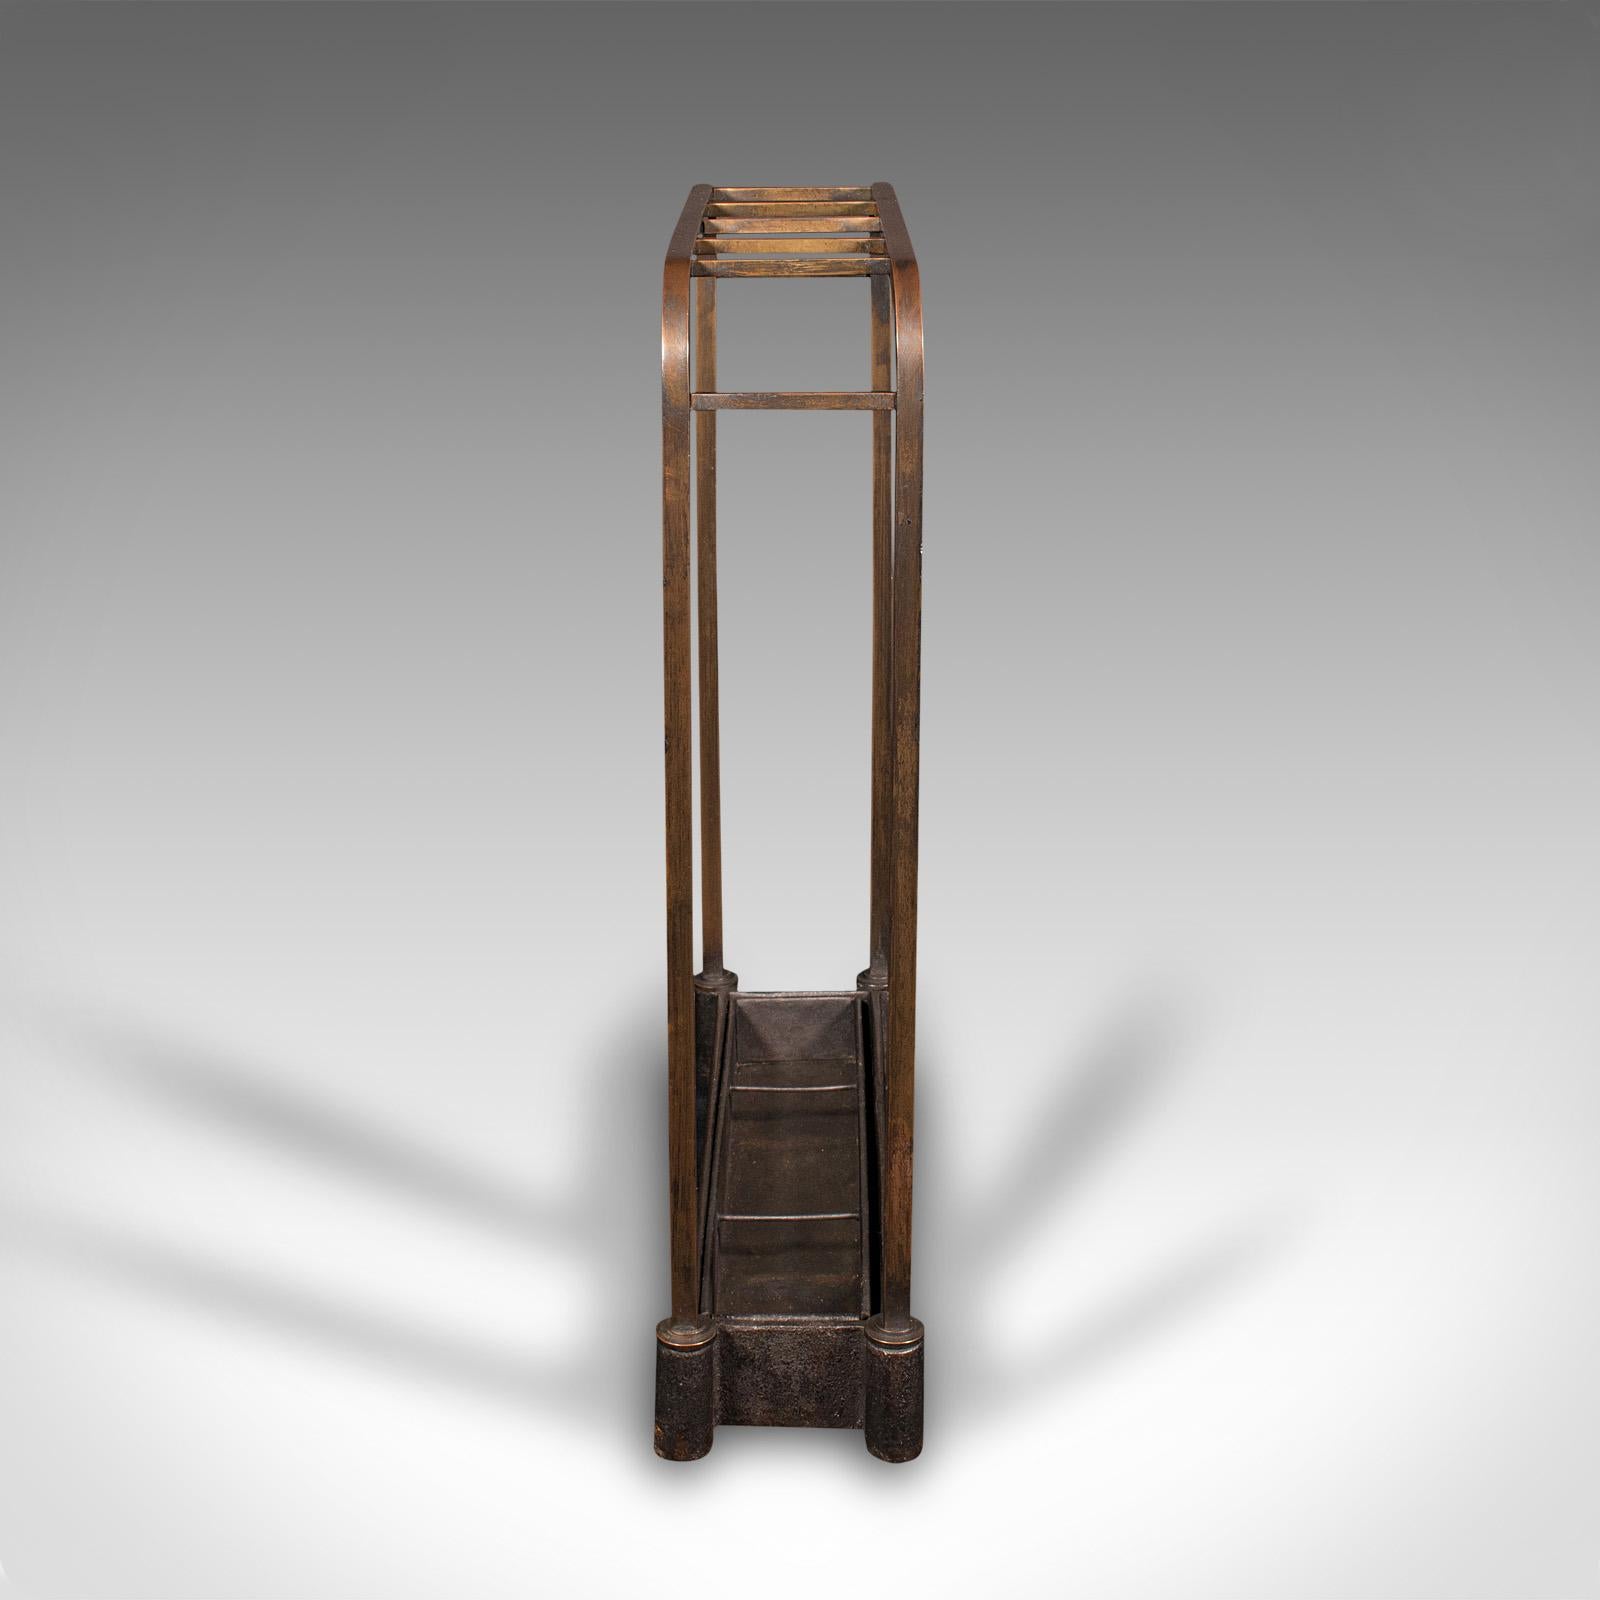 British Antique Segmented Stick Stand, English, Brass, Umbrella Rack, Hallway, Victorian